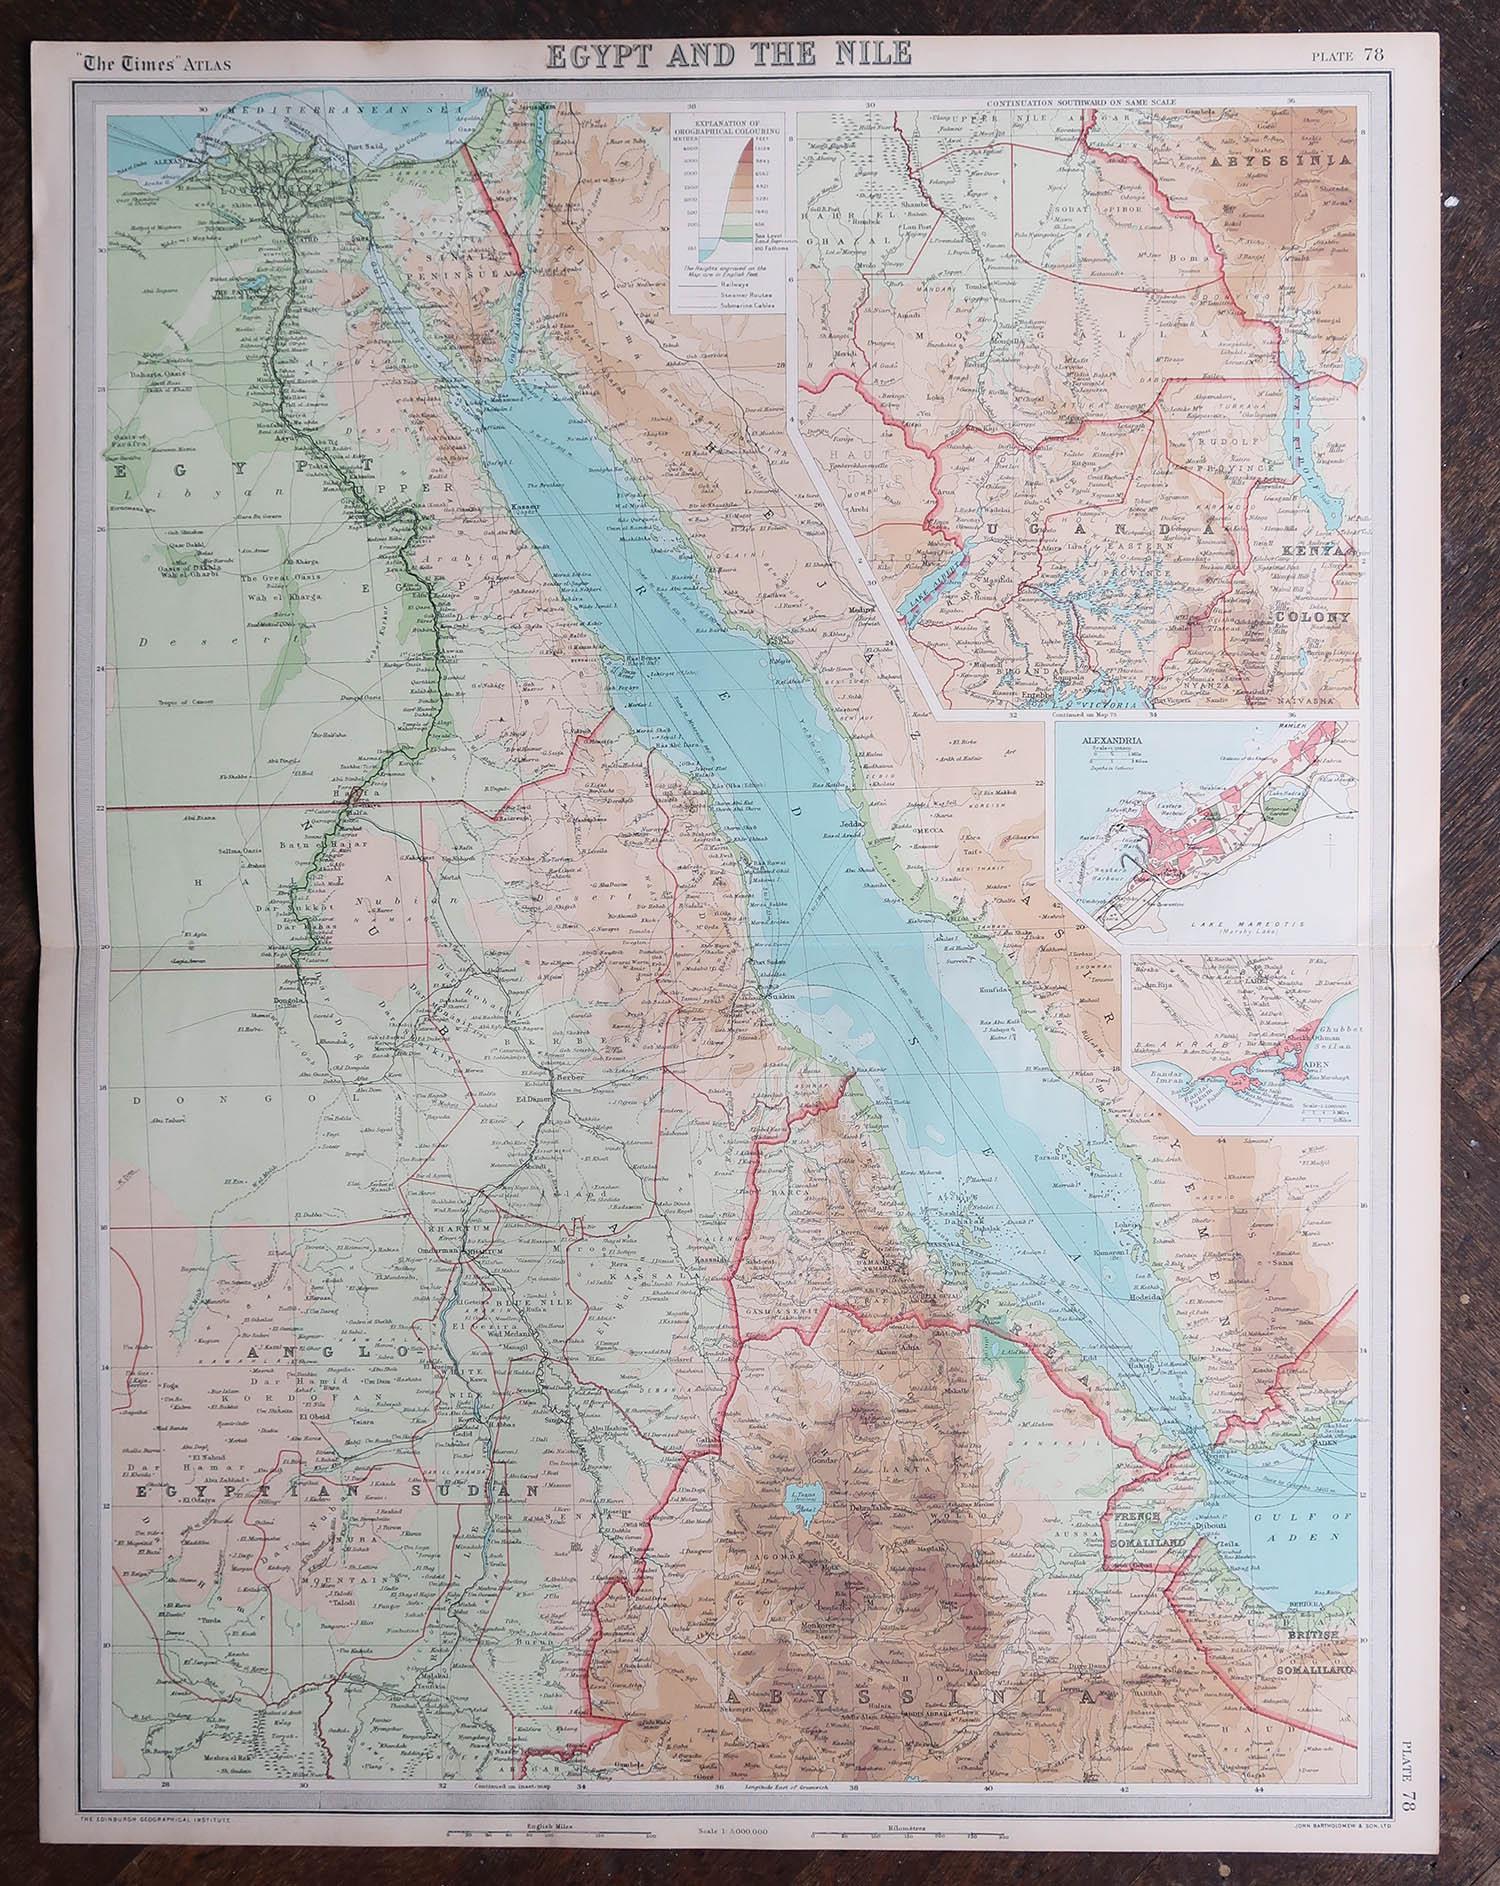 Große Original Vintage Karte von Ägypten, um 1920 (Britisch)